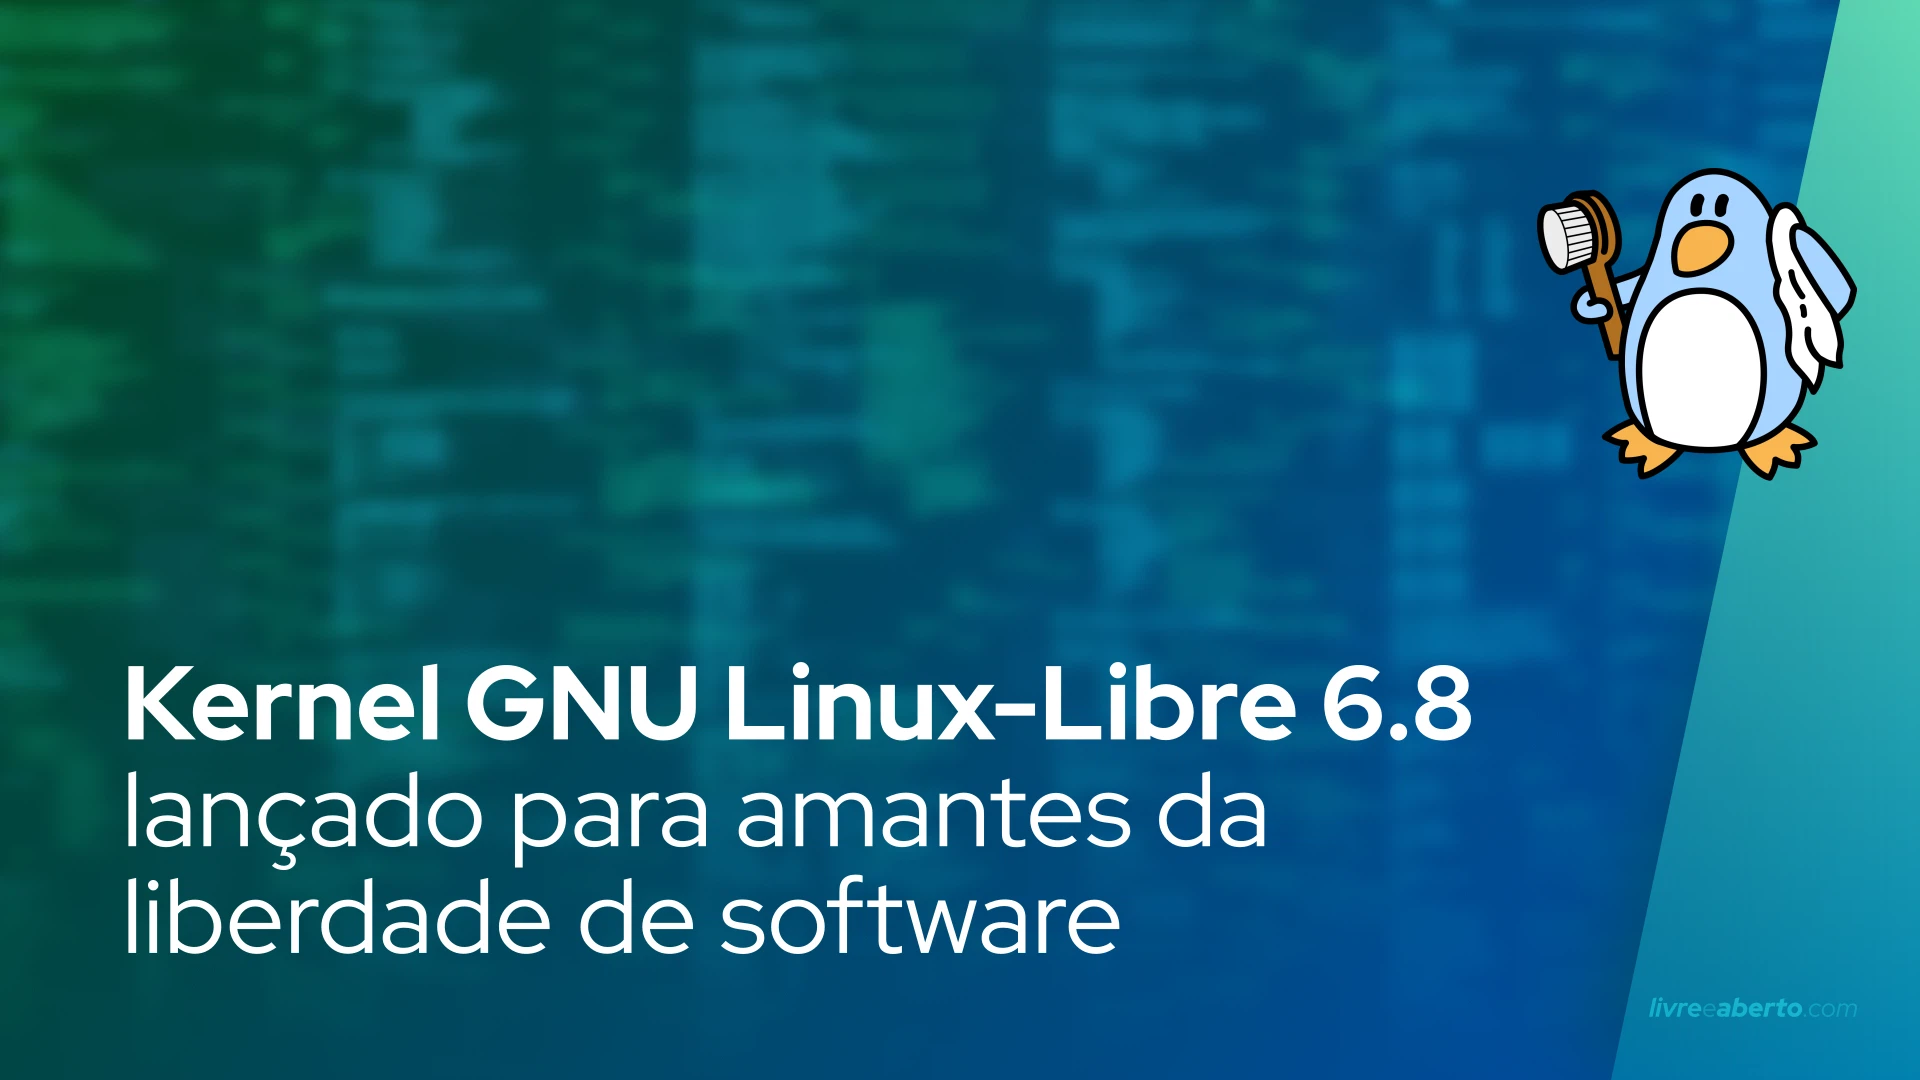 Kernel GNU Linux-Libre 6.8 lançado para amantes da liberdade de software